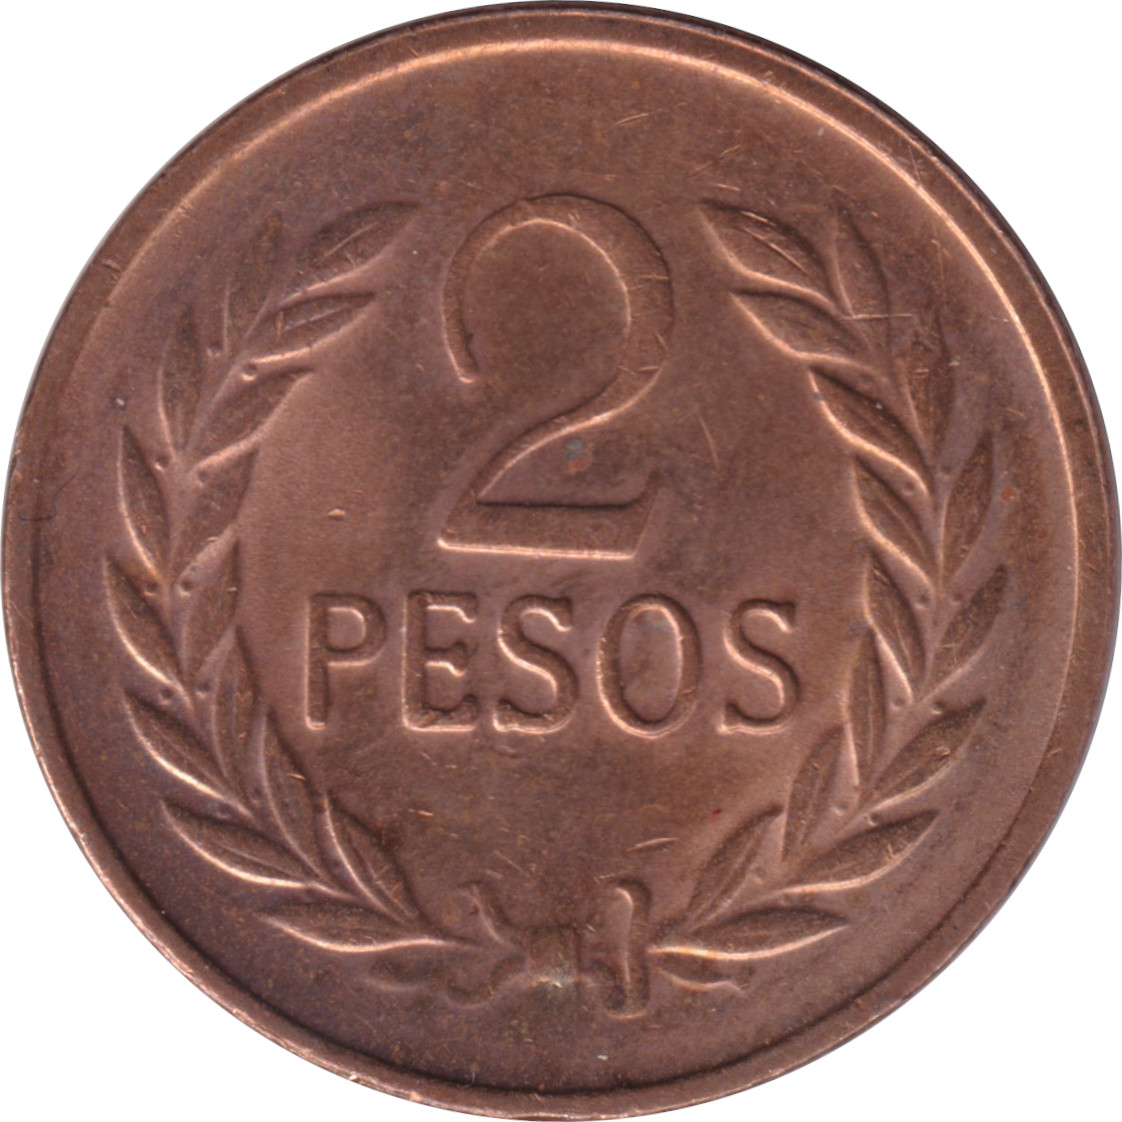 2 pesos - Simon Bolivar